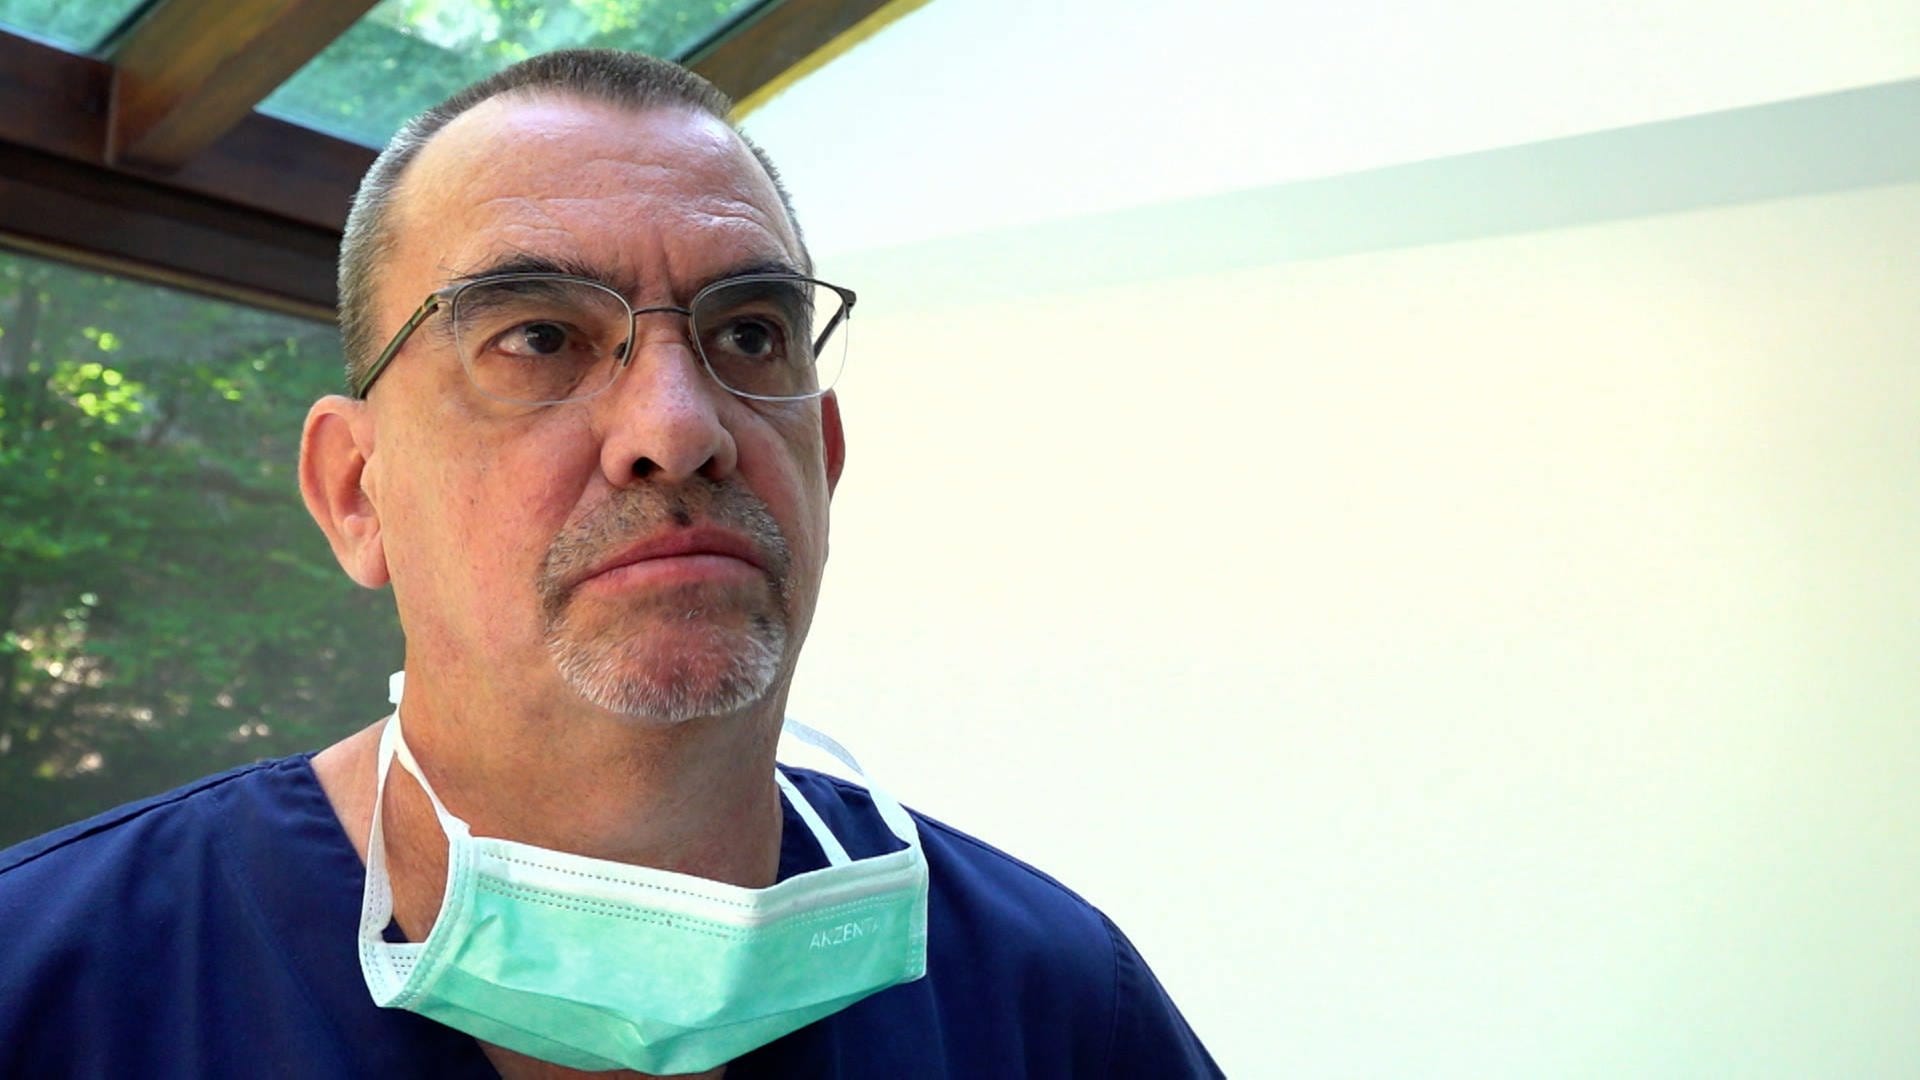 Thomas hat eine mobile Zahnarztpraxis und behandelt bettlägerige Patienten